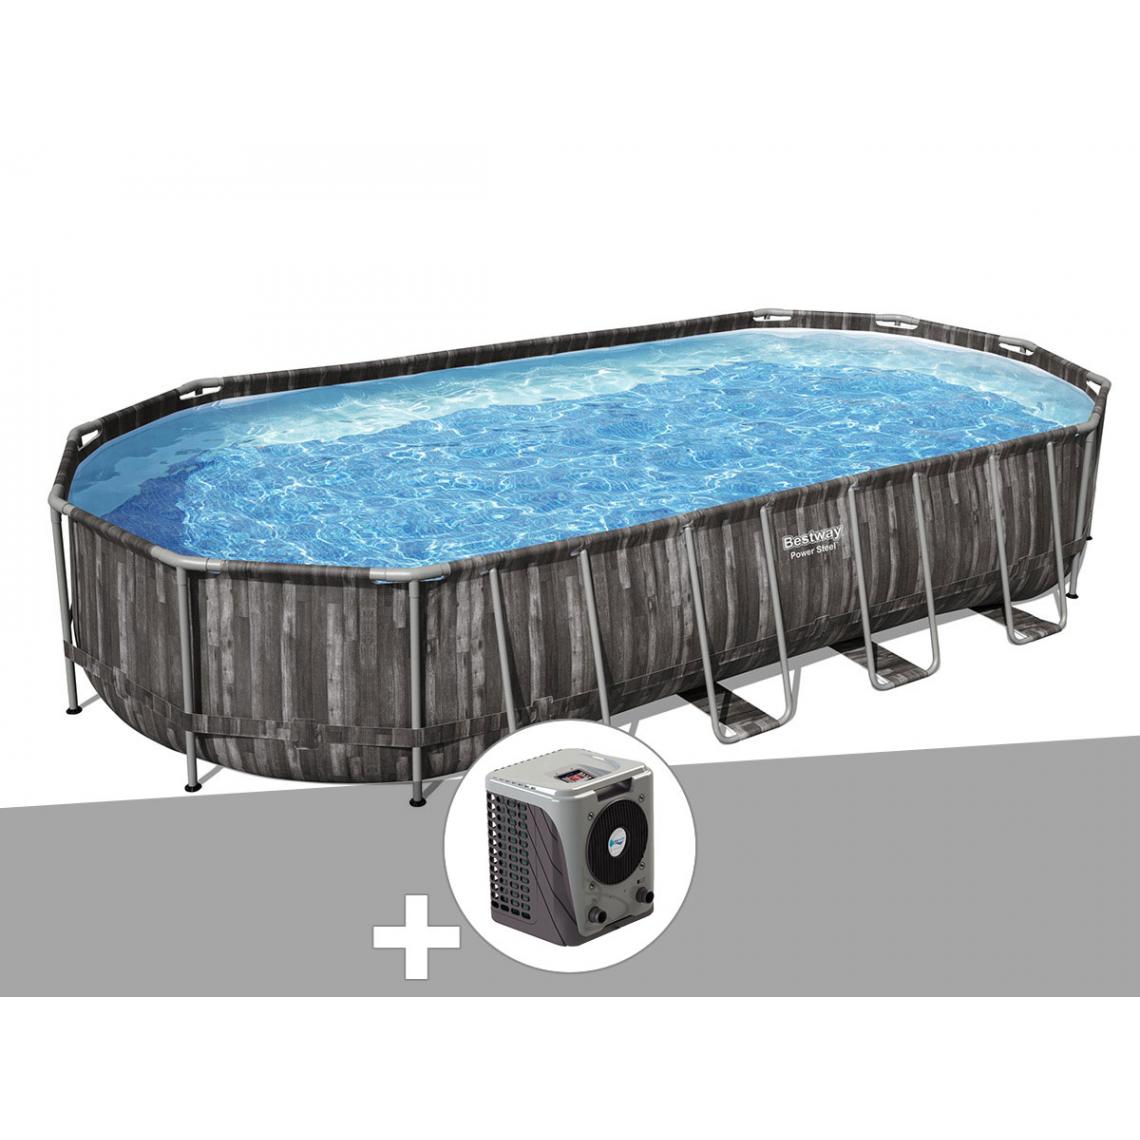 Bestway - Kit piscine tubulaire ovale Bestway Power Steel décor bois 7,32 x 3,66 x 1,22 m + Pompe à chaleur - Piscine Tubulaire